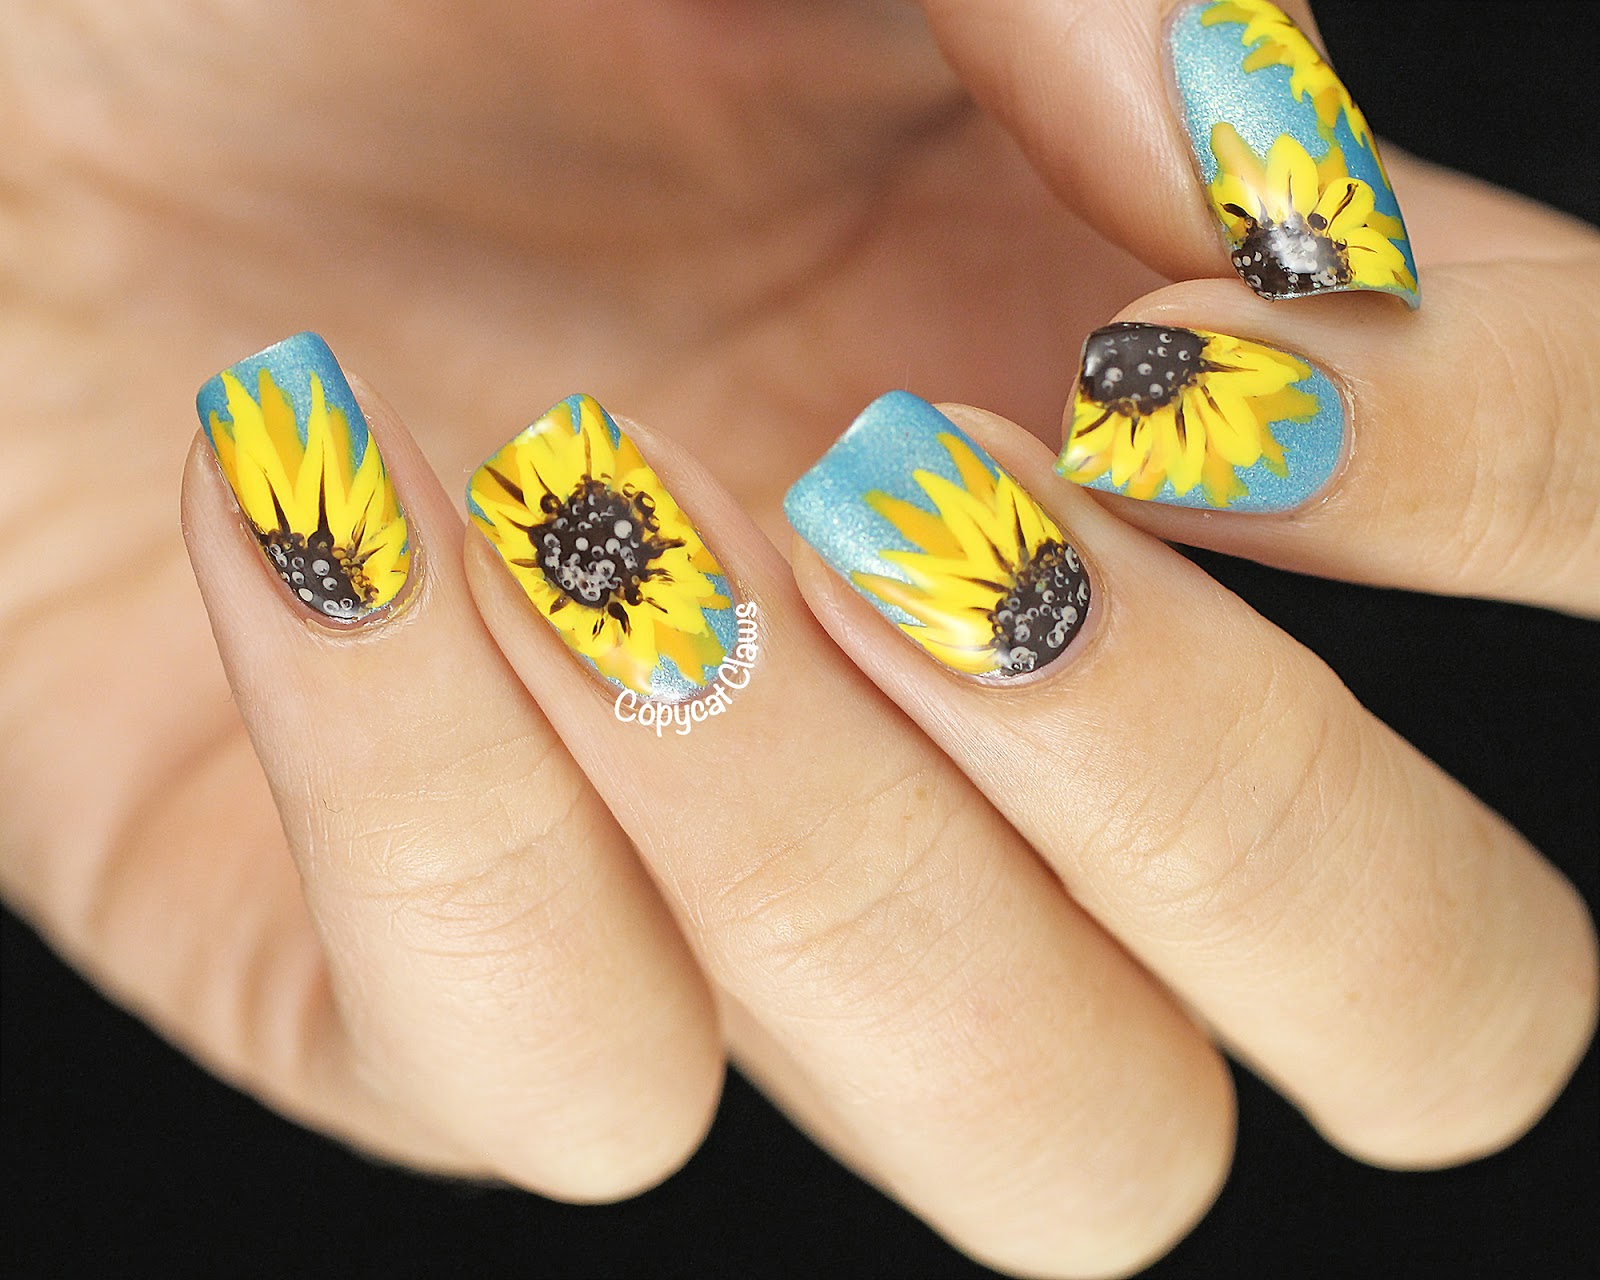 3. Sunflower Nail Art Ideas - wide 3